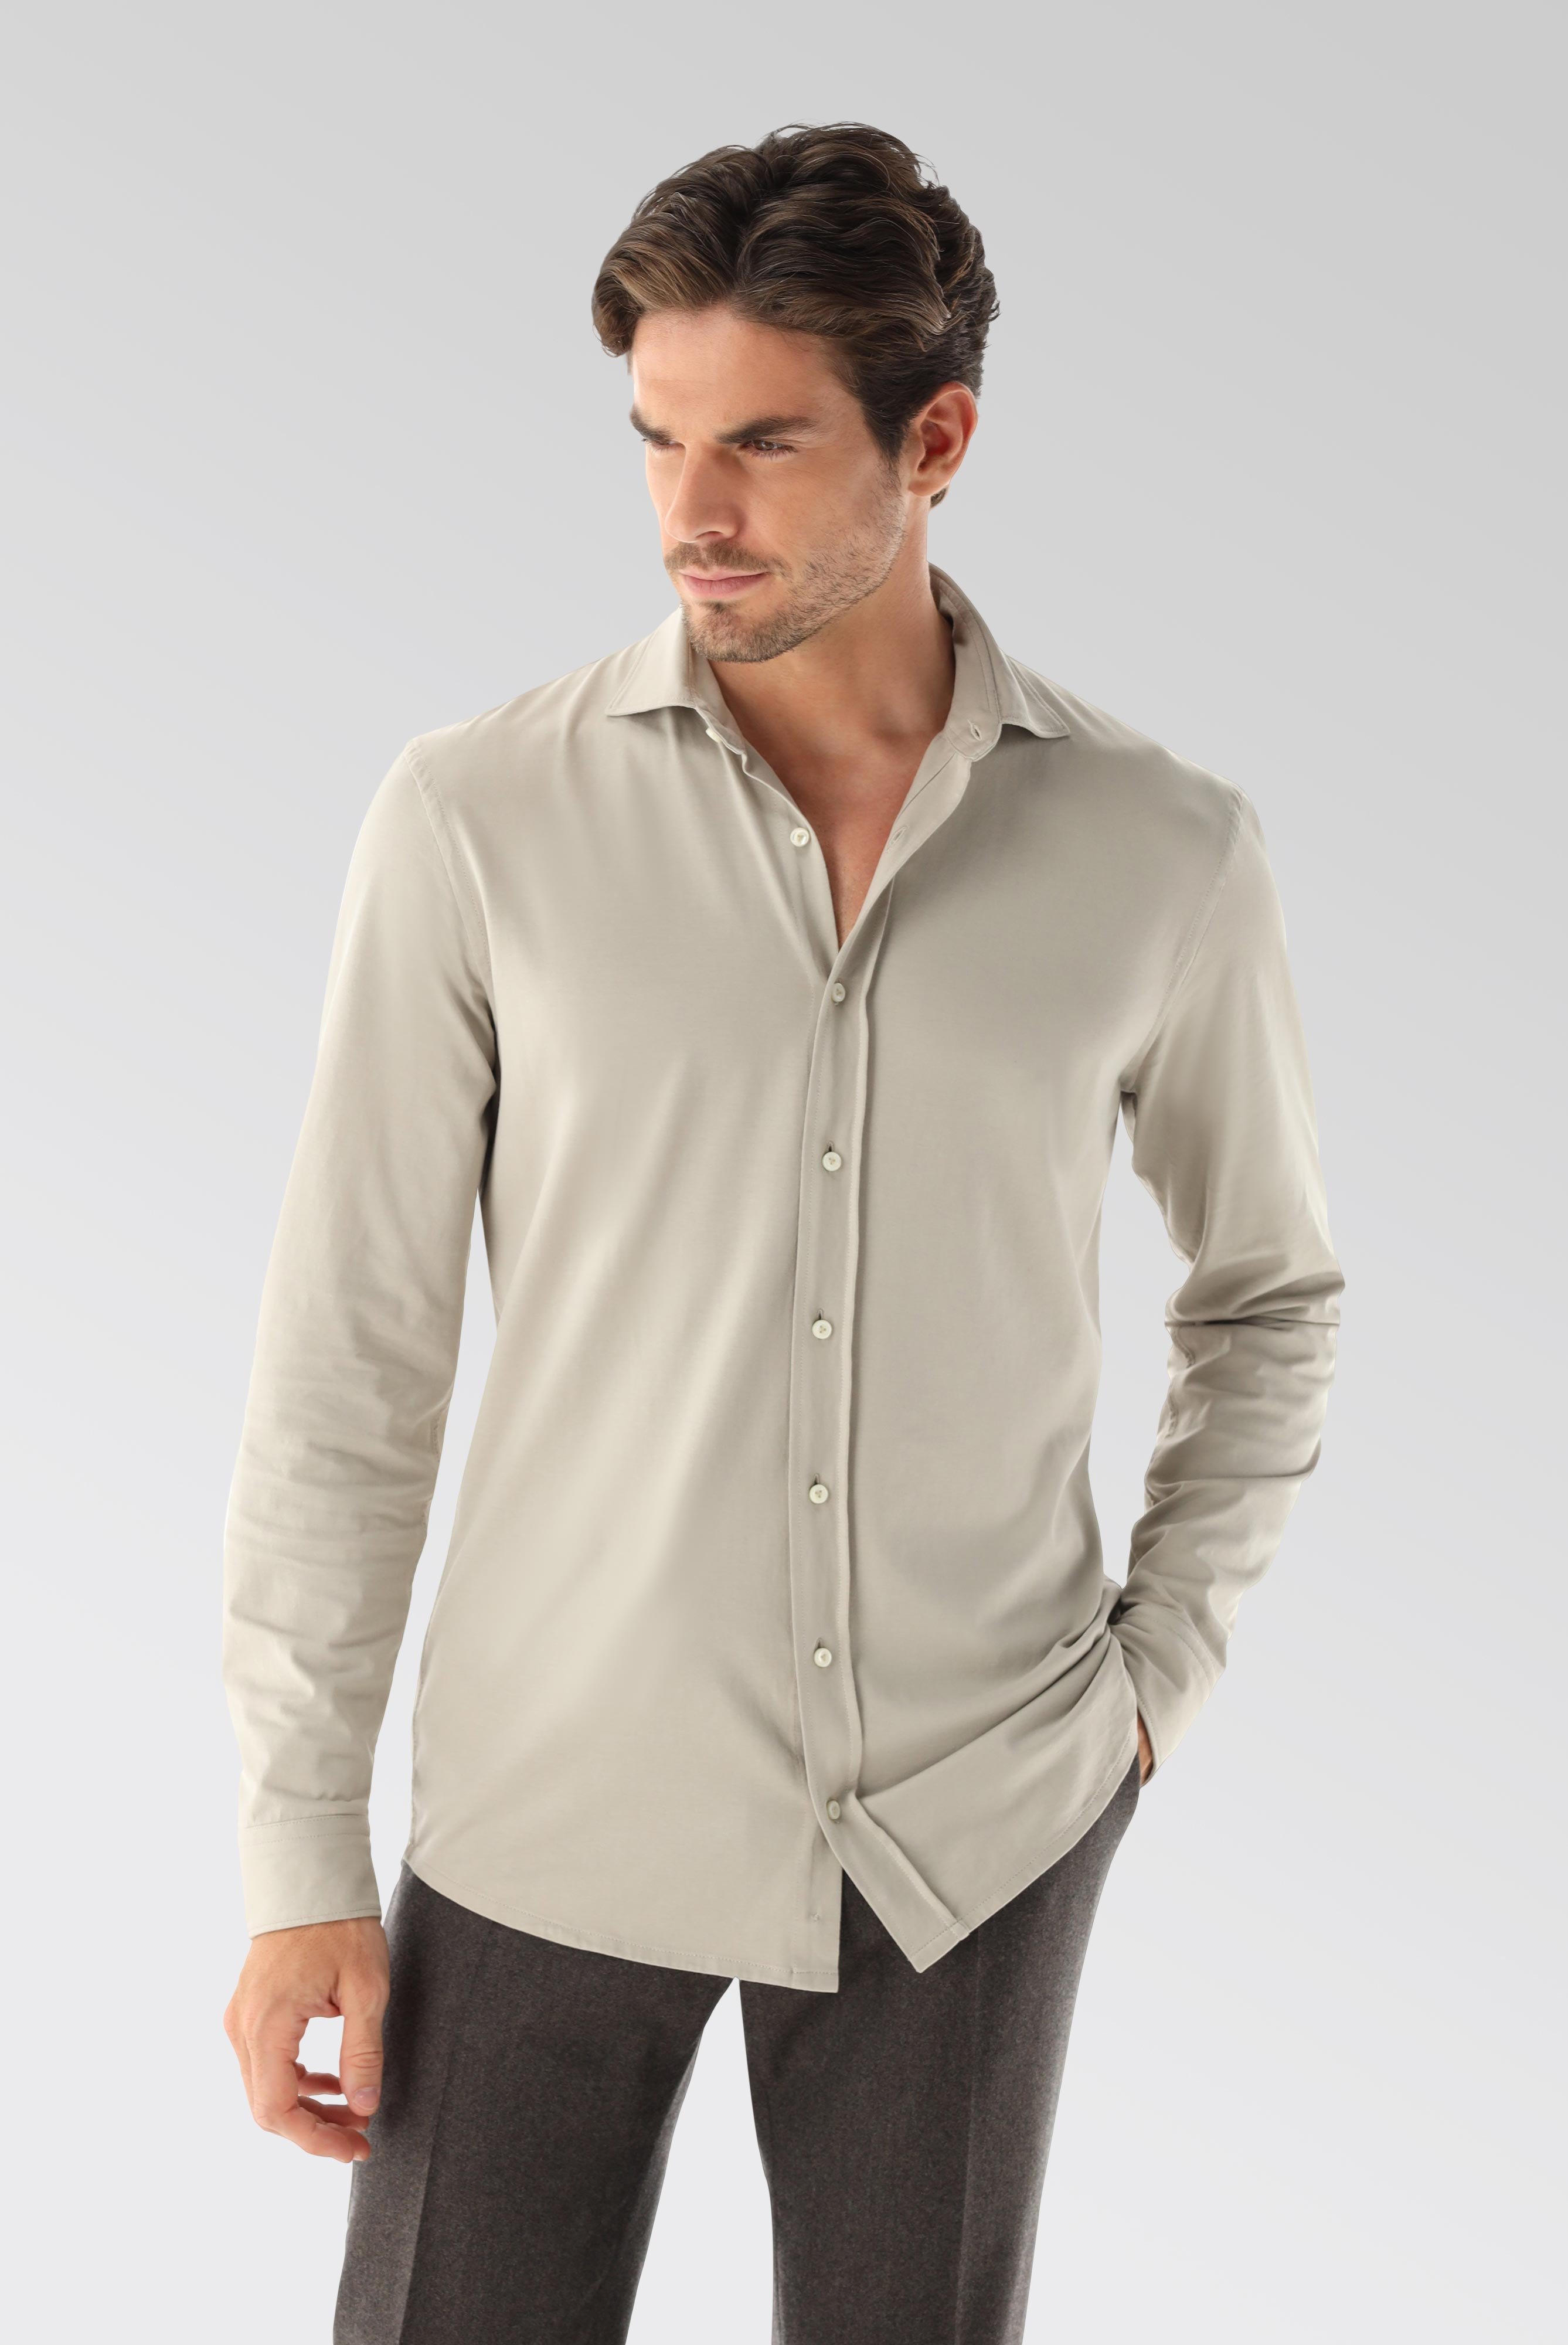 Jersey Hemden+Jersey Shirt Urban Look Slim Fit+20.1651.UC.Z20044.120.L